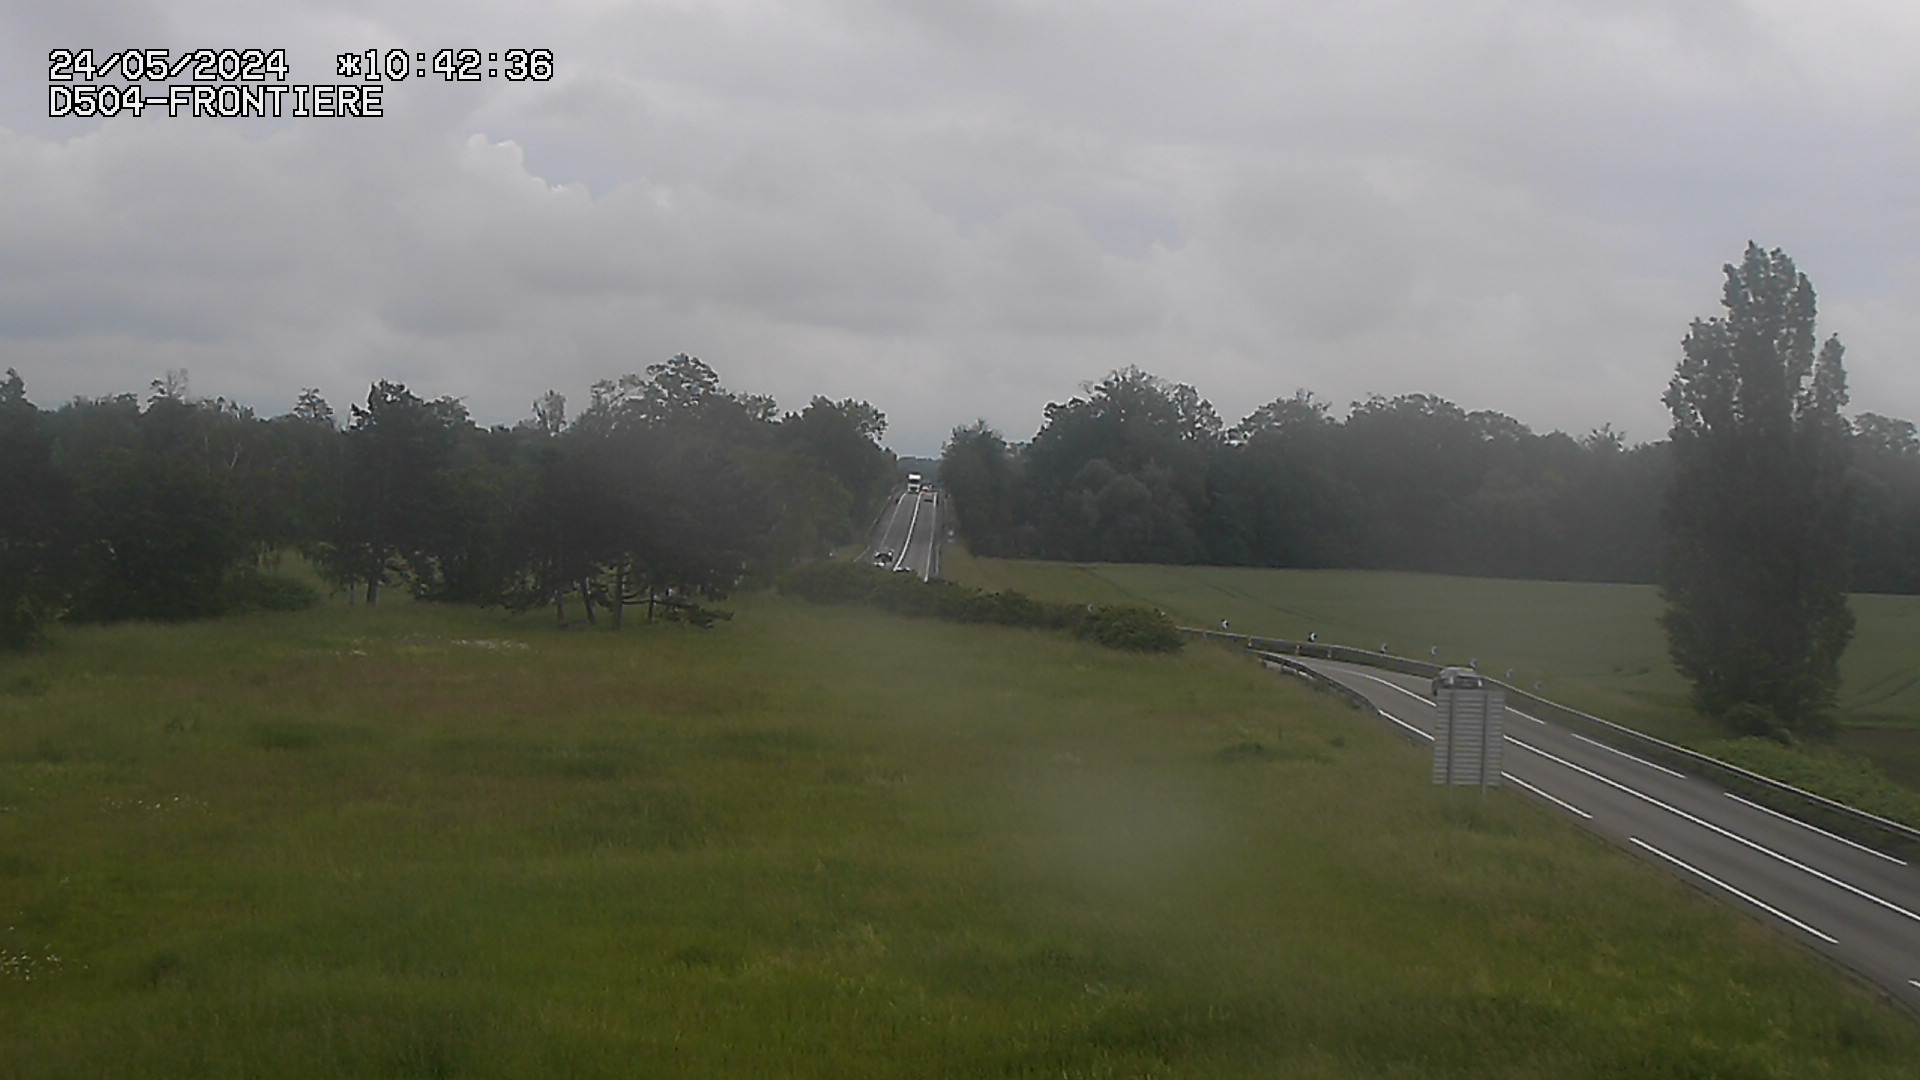 <h2>Webcam routière à Roppenheim sur la D4. La voie en sens inverse se dirige vers la frontière allemande</h2>